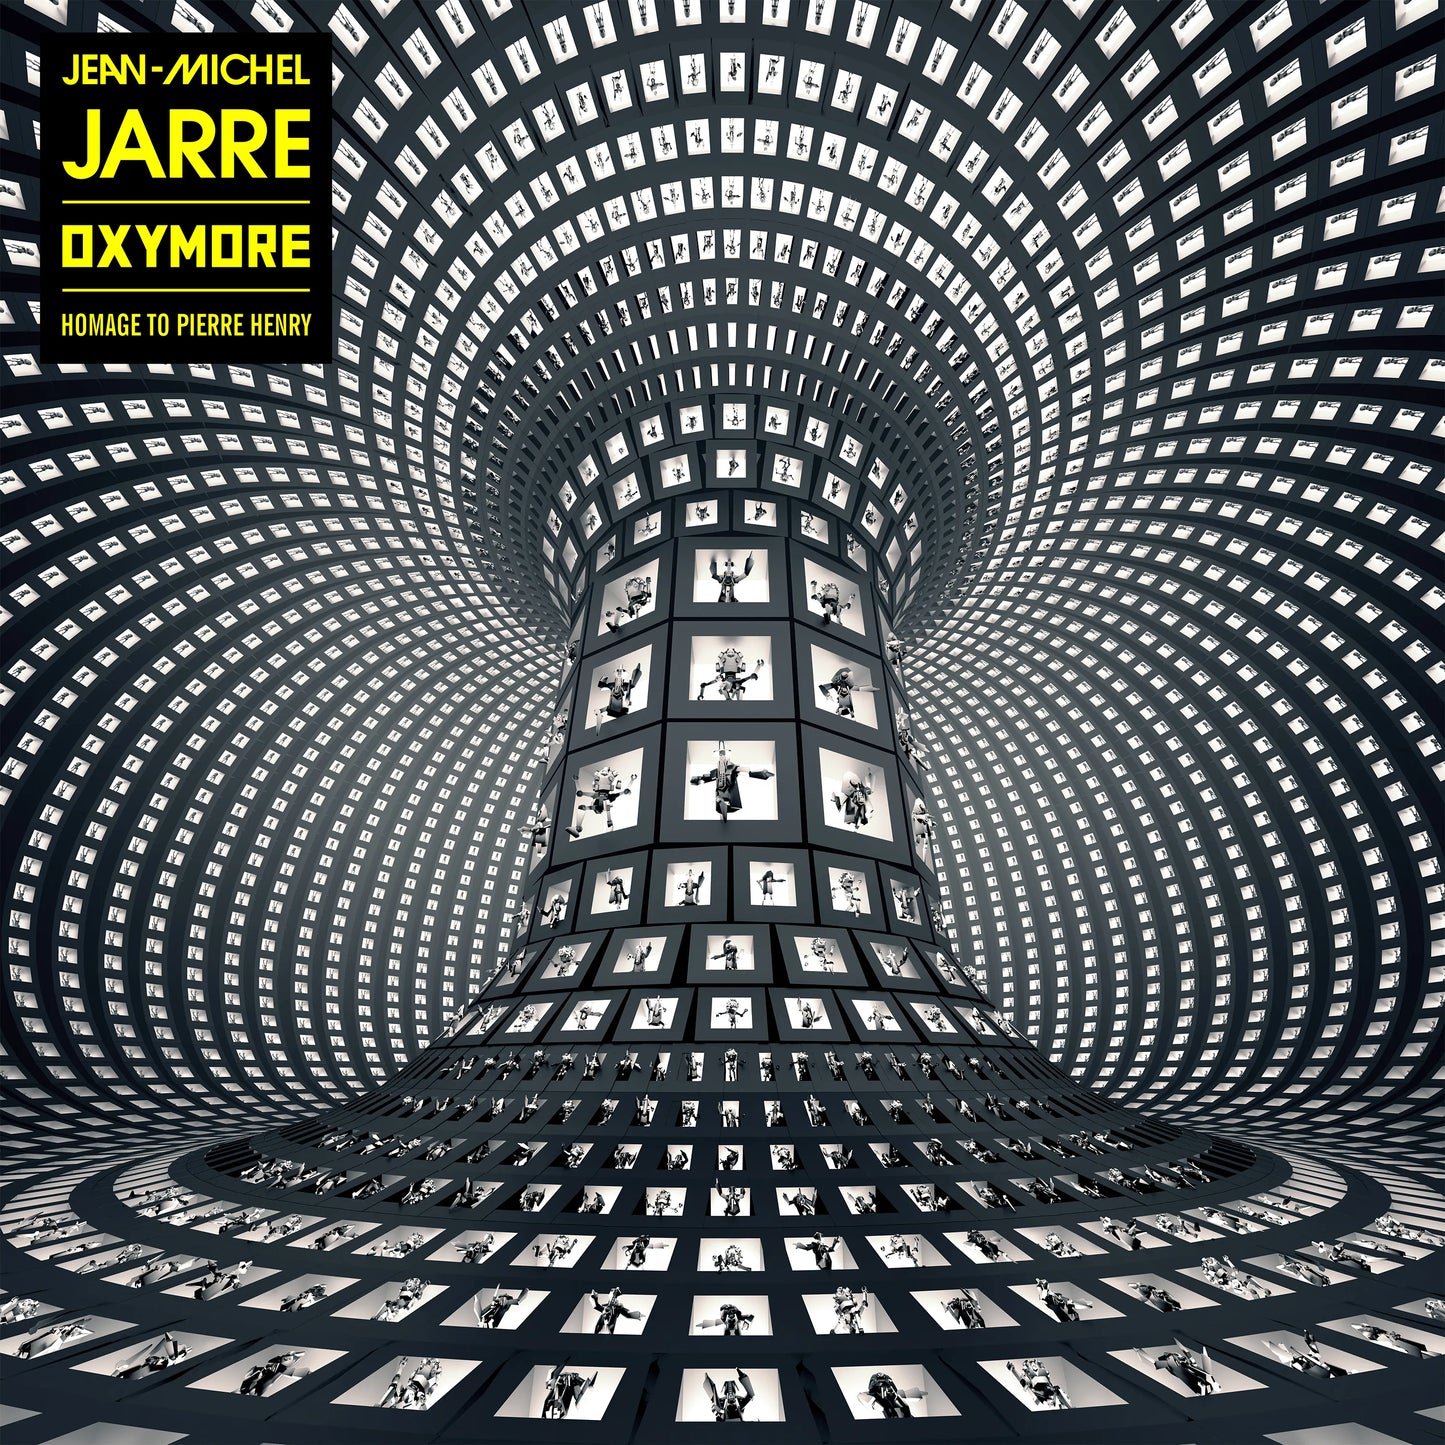 Jarre, Jean-Michel - Oxymore